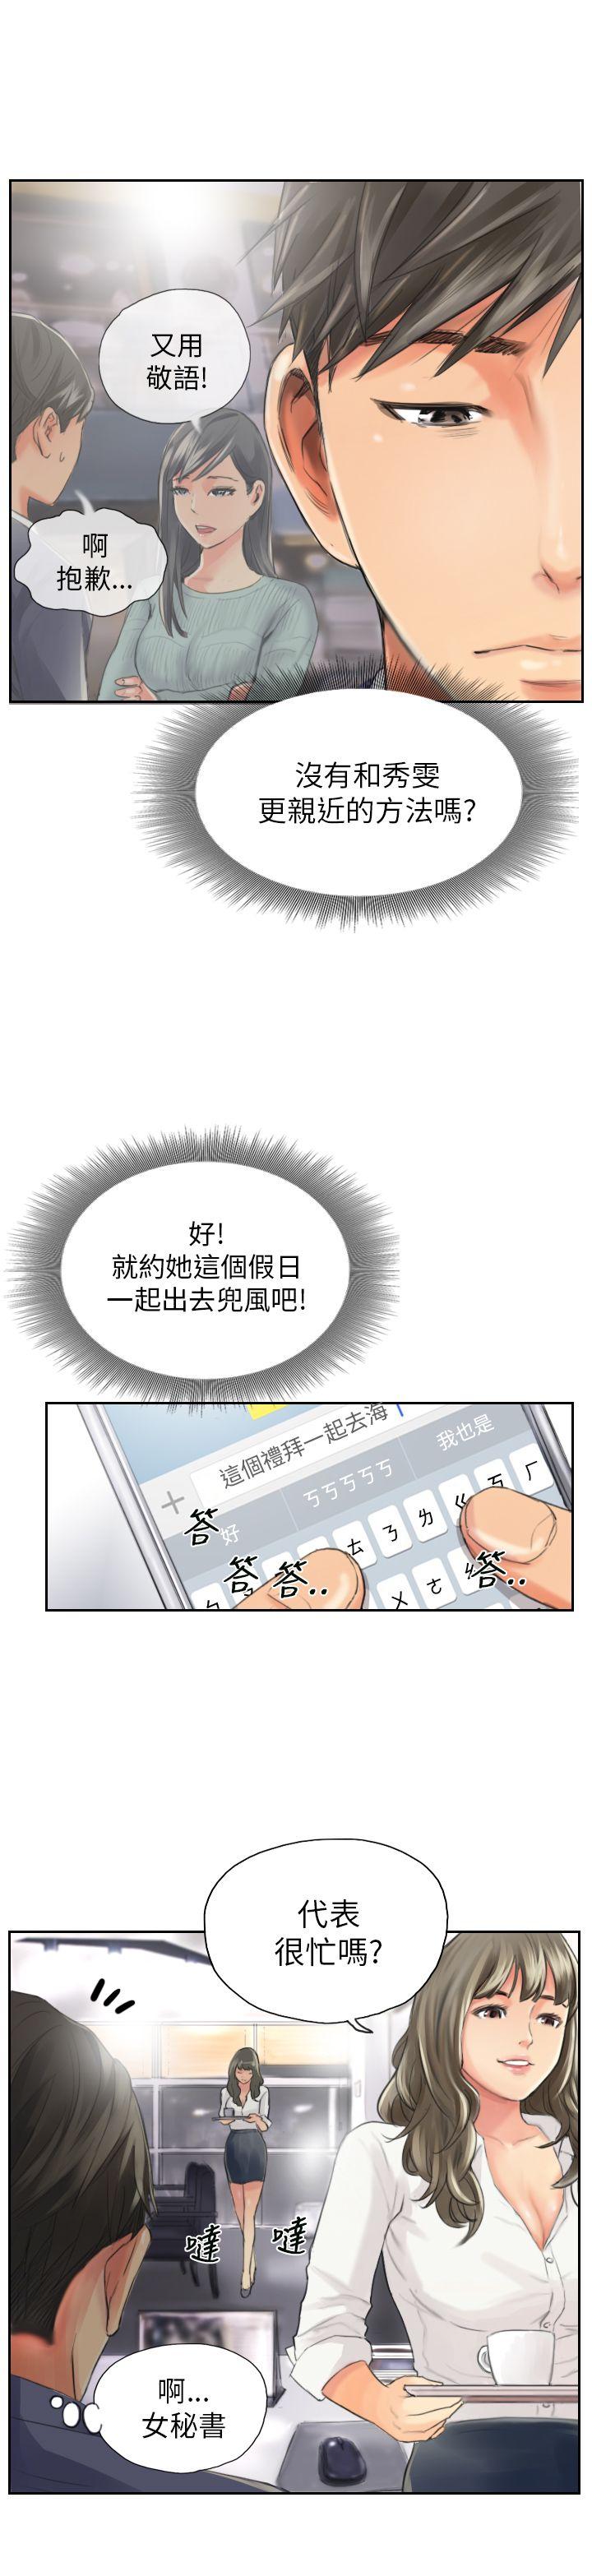 韩国污漫画 NEW FACE 第13话 11